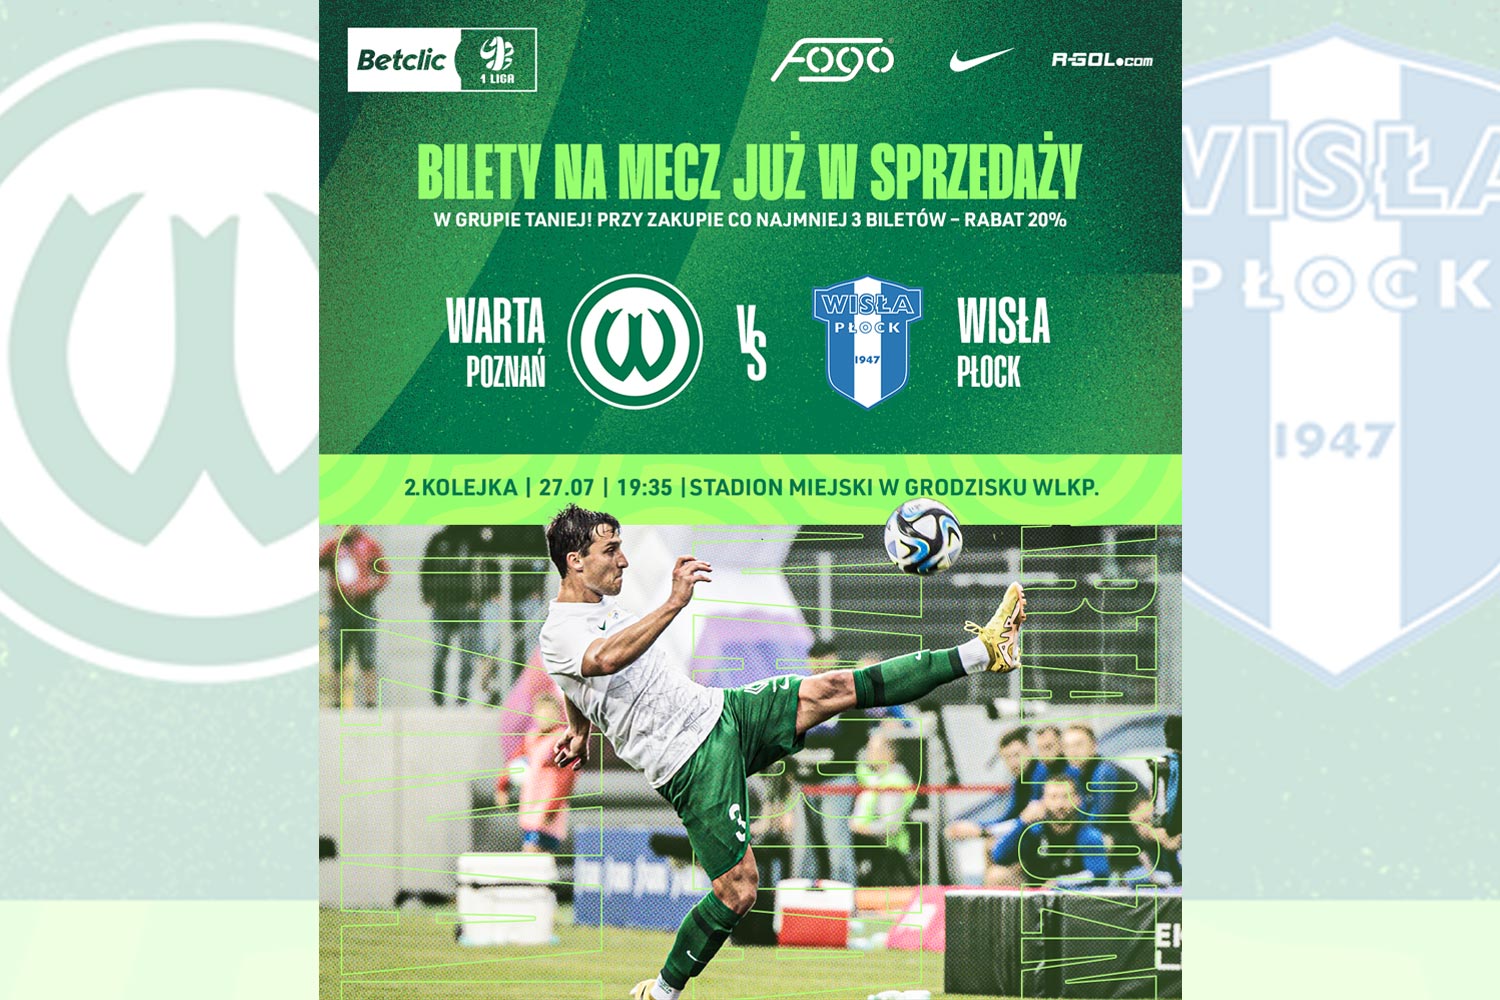 Kup bilet na mecz Warta Poznań - Wisła Płock